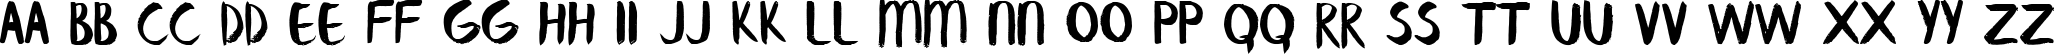 Пример написания английского алфавита шрифтом Banaue Regular